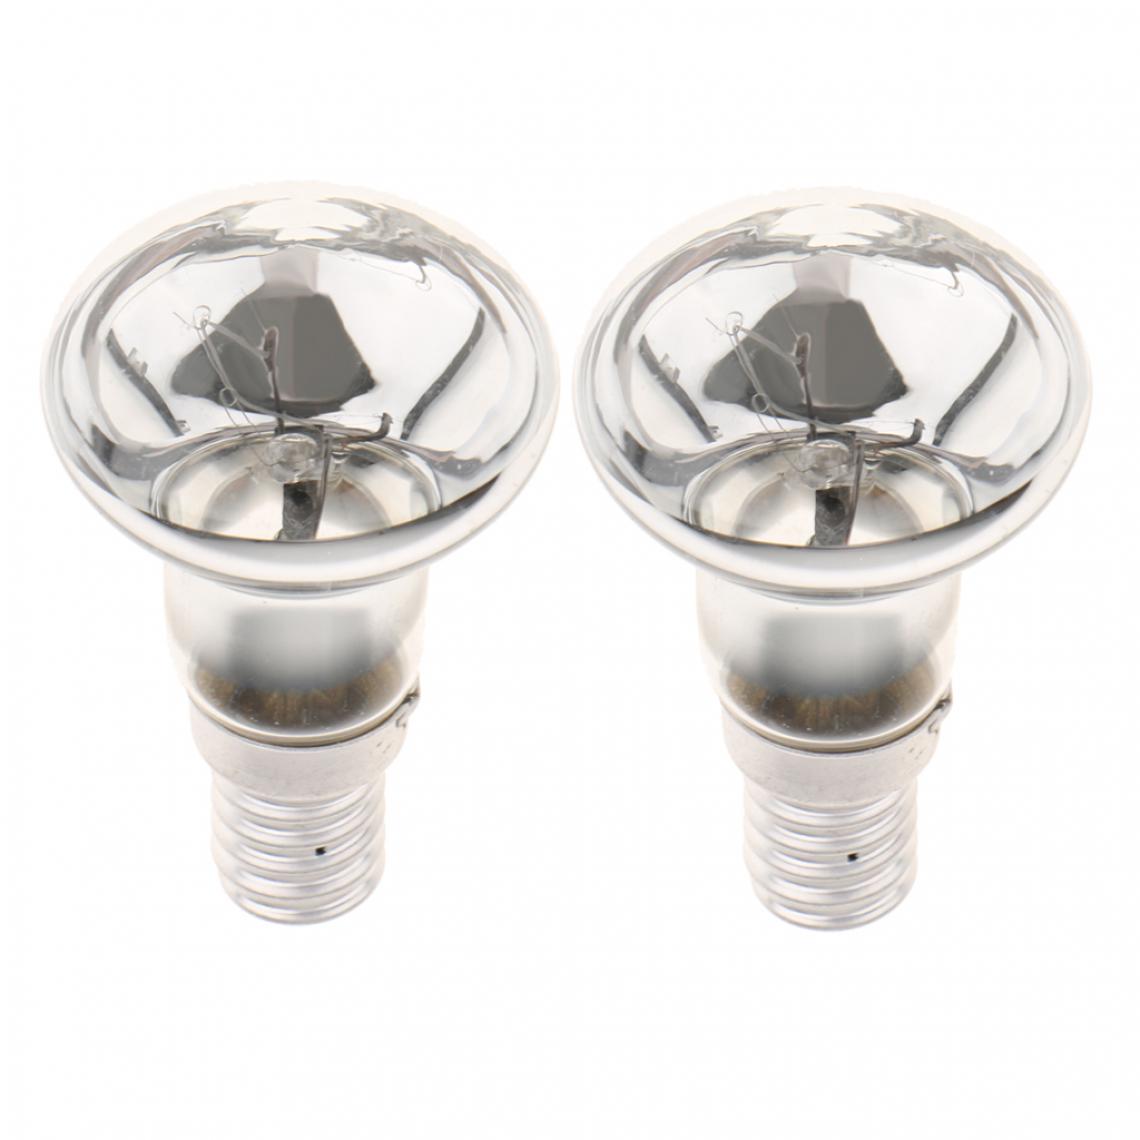 NC - 2pcs 220V R39 Lampes à Paillettes Ampoule de Rechange pour Réflecteur Ampoule de Projecteur - Ampoules LED